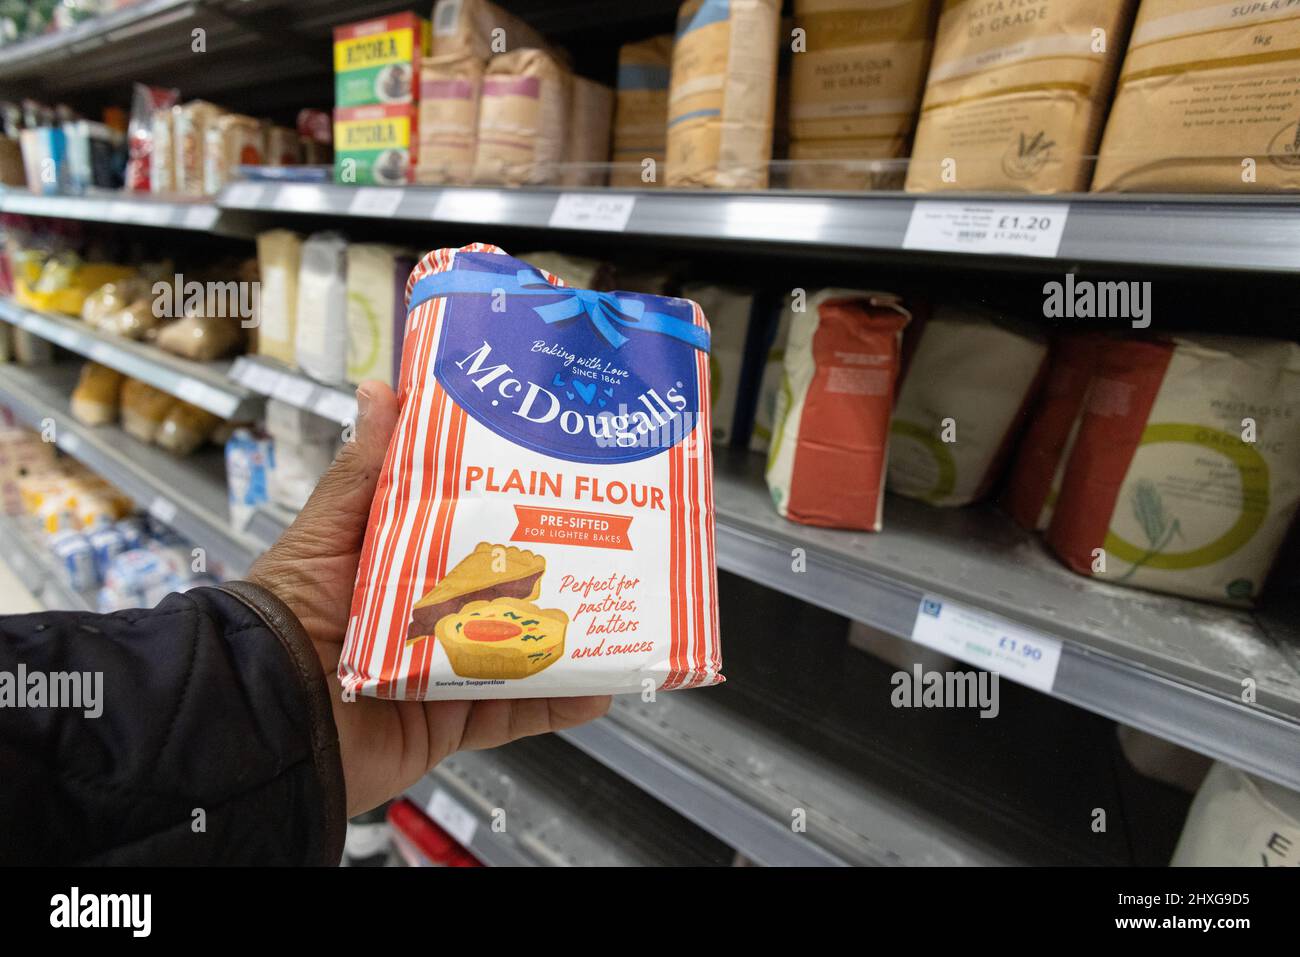 Sac de farine; achat d'un sac de farine - McDougalls farine ordinaire, dans un supermarché avec sacs de farine sur les étagères du supermarché, supermarché Waitrose Royaume-Uni Banque D'Images